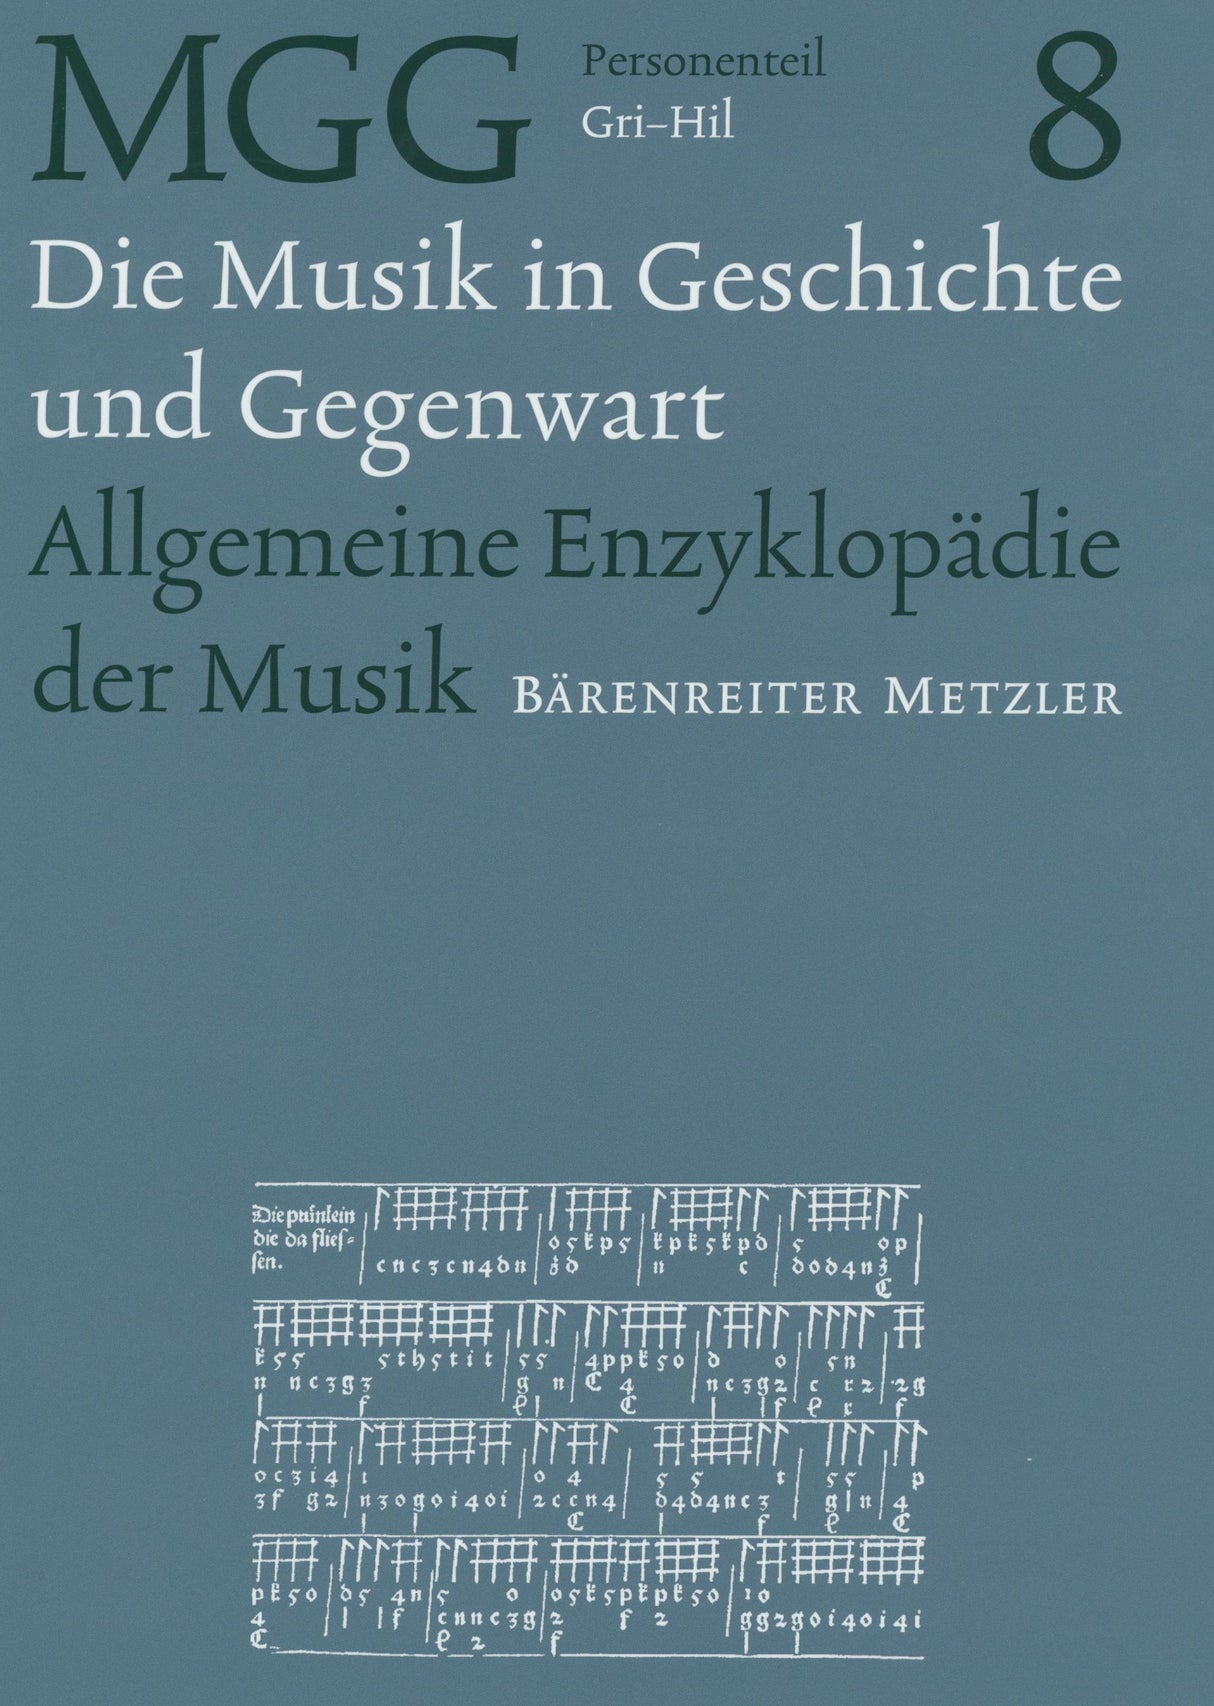 Die Musik in Geschichte and Gegenwart - Volume 8: Gri-Hil